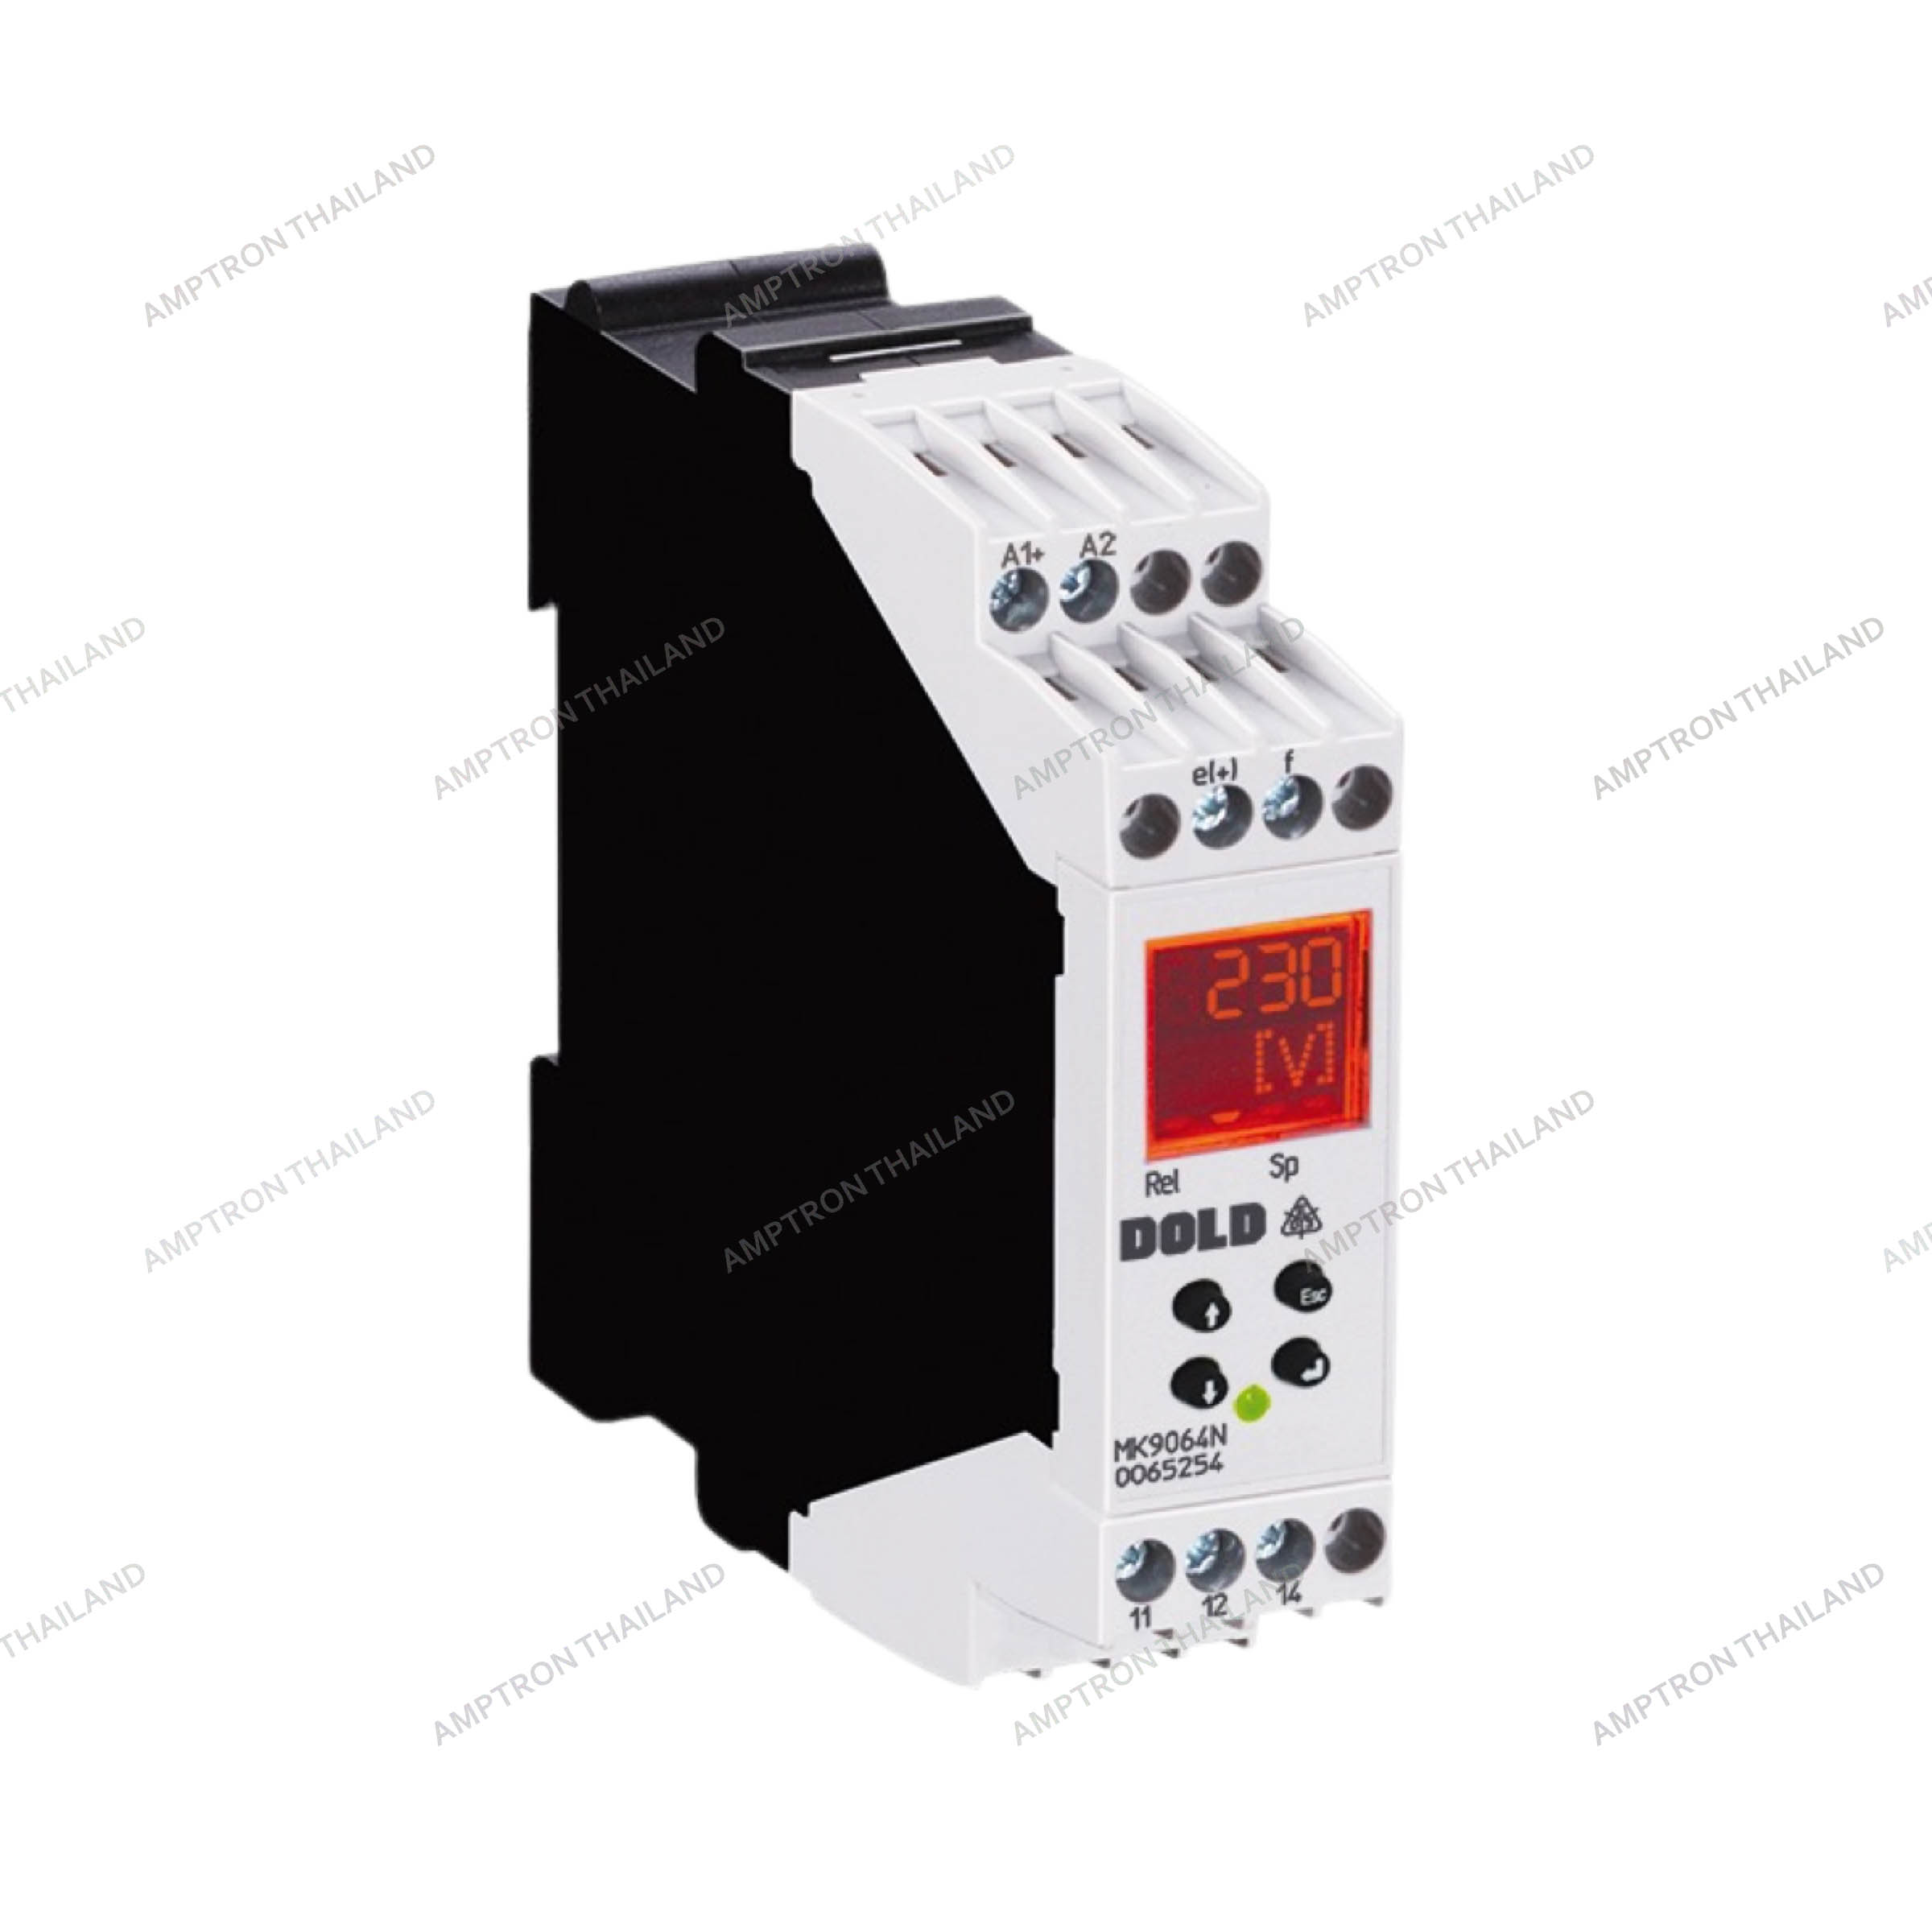 MK 9064N   Varimeter Voltage relay